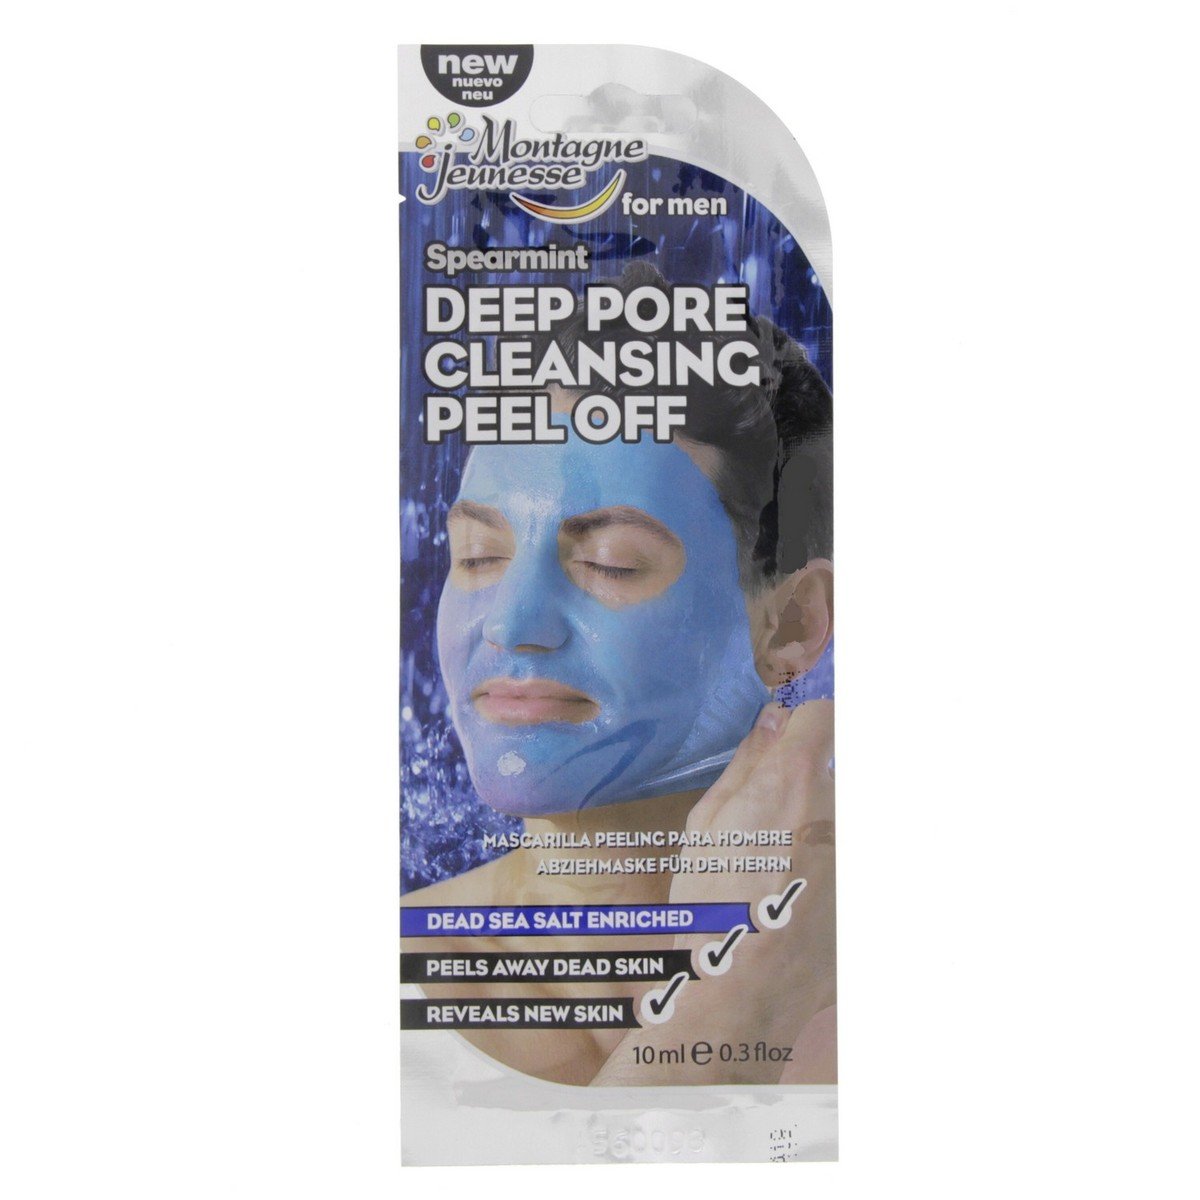 Montagne Jeunesse Deep Pore Cleansing Peel Off spearmint Men 10 g